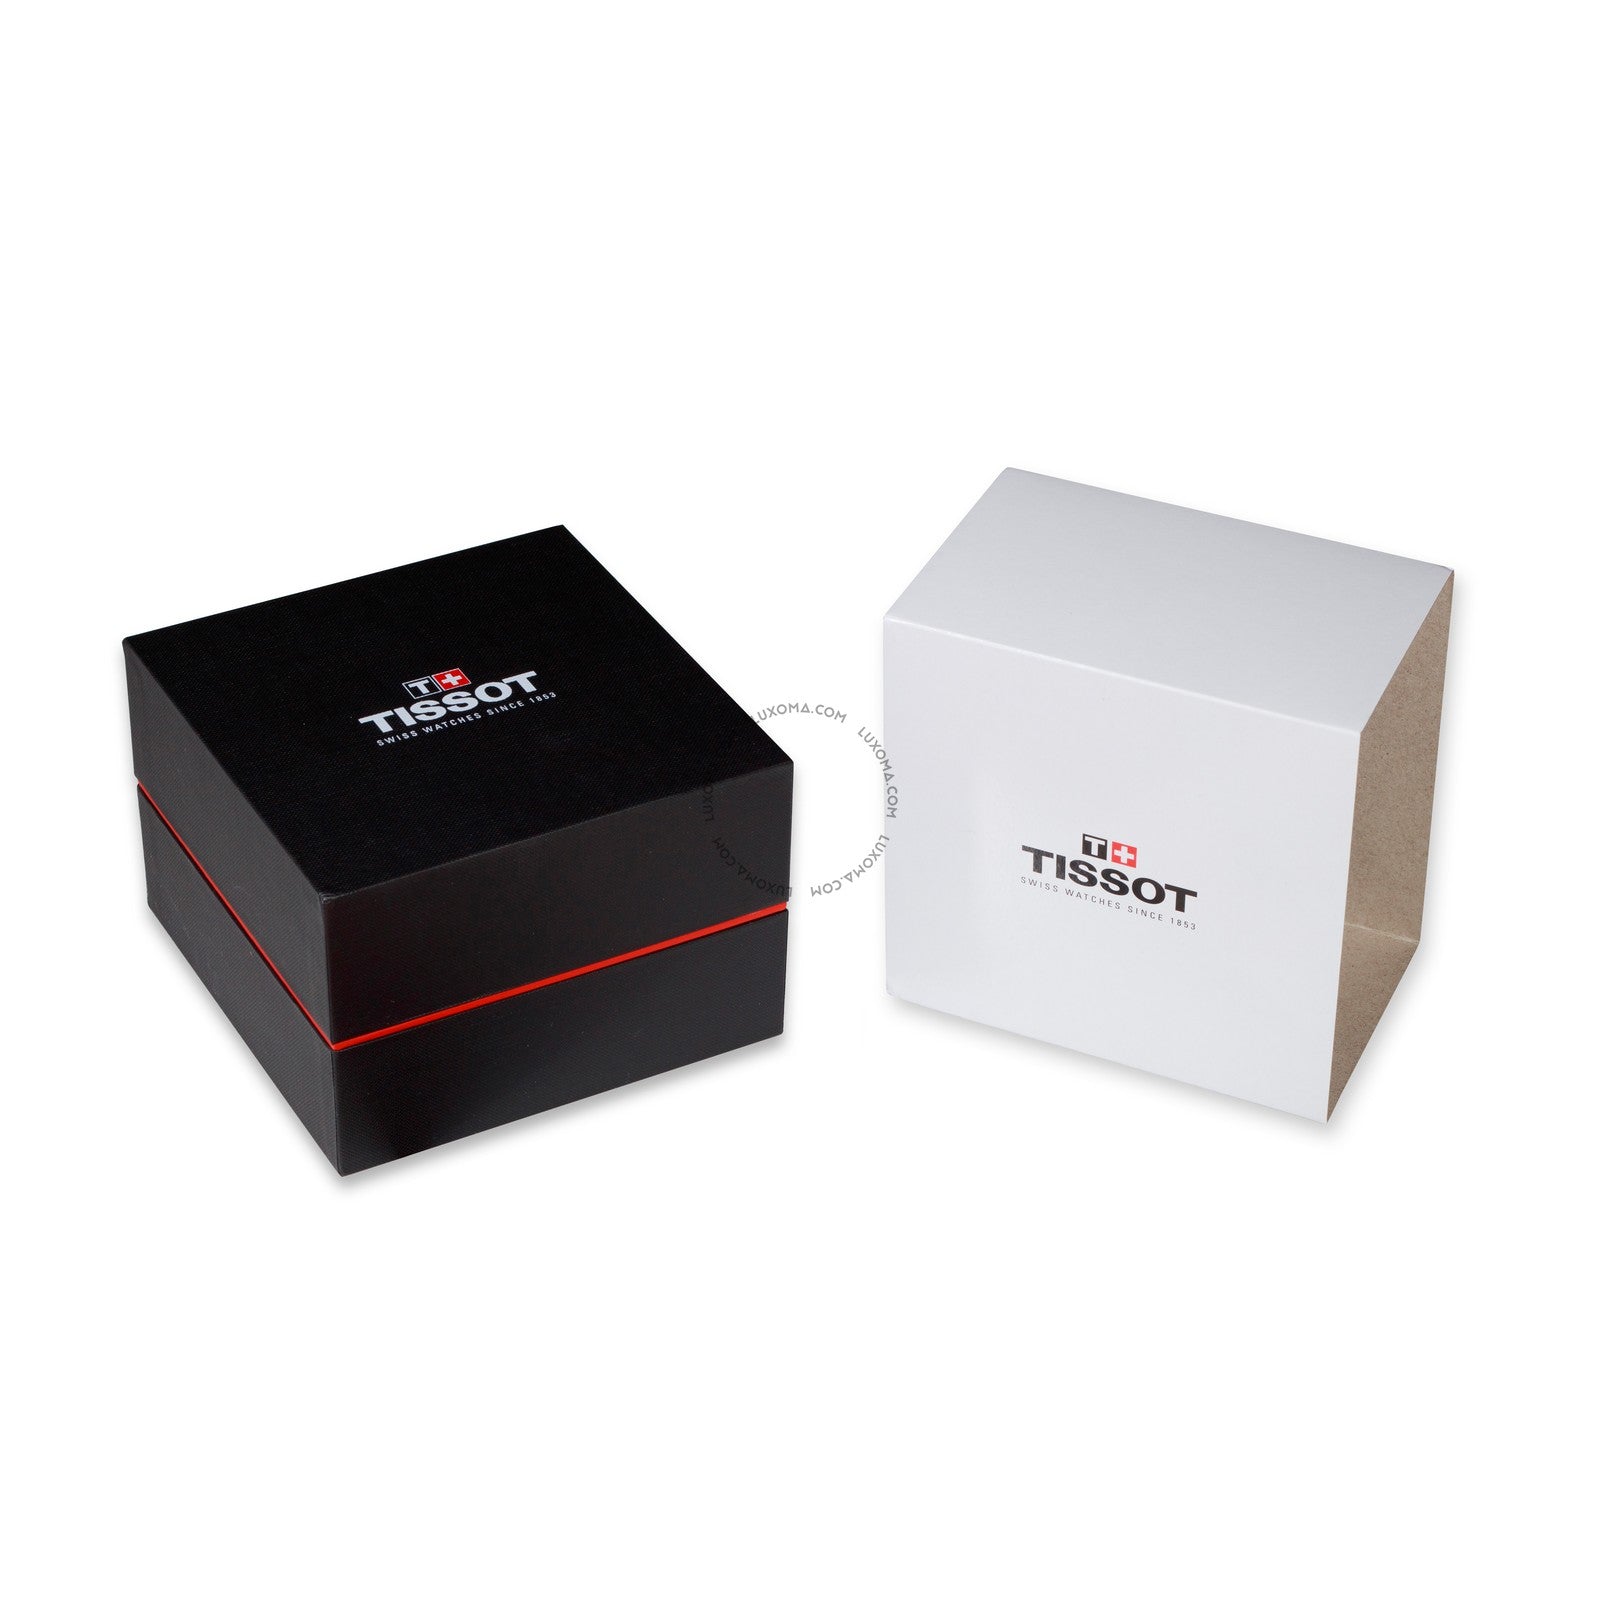 Tissot Tissot PRS 516 Automatic Black Carbon Dial Men's Watch T100.430.37.201.00